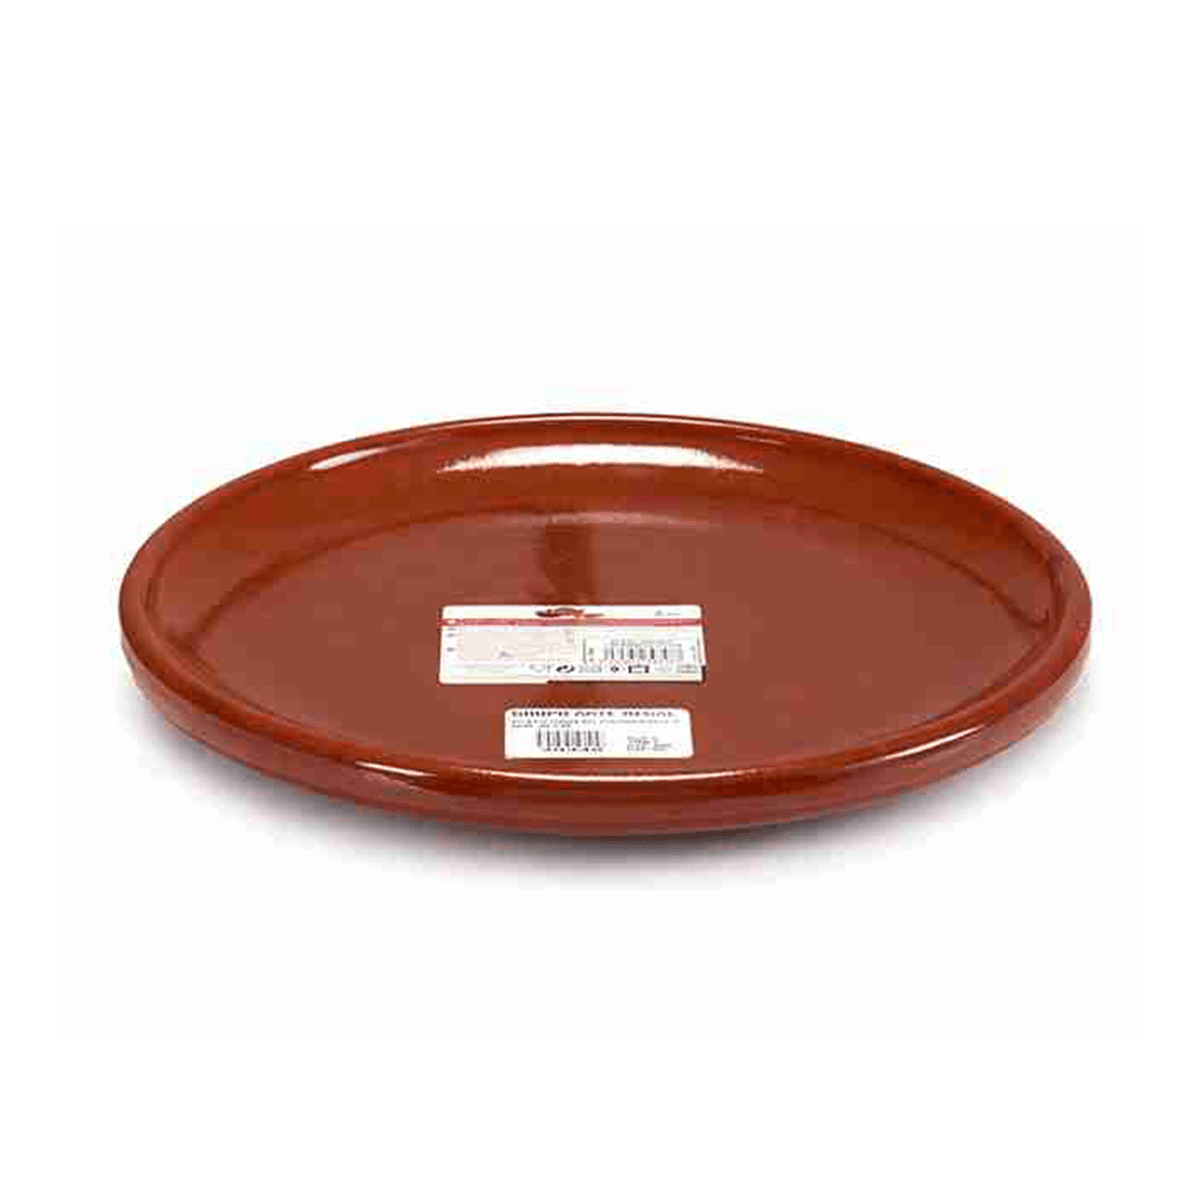 Arte Regal Brown Clay Steak Thick Plate 30 cm / 12"